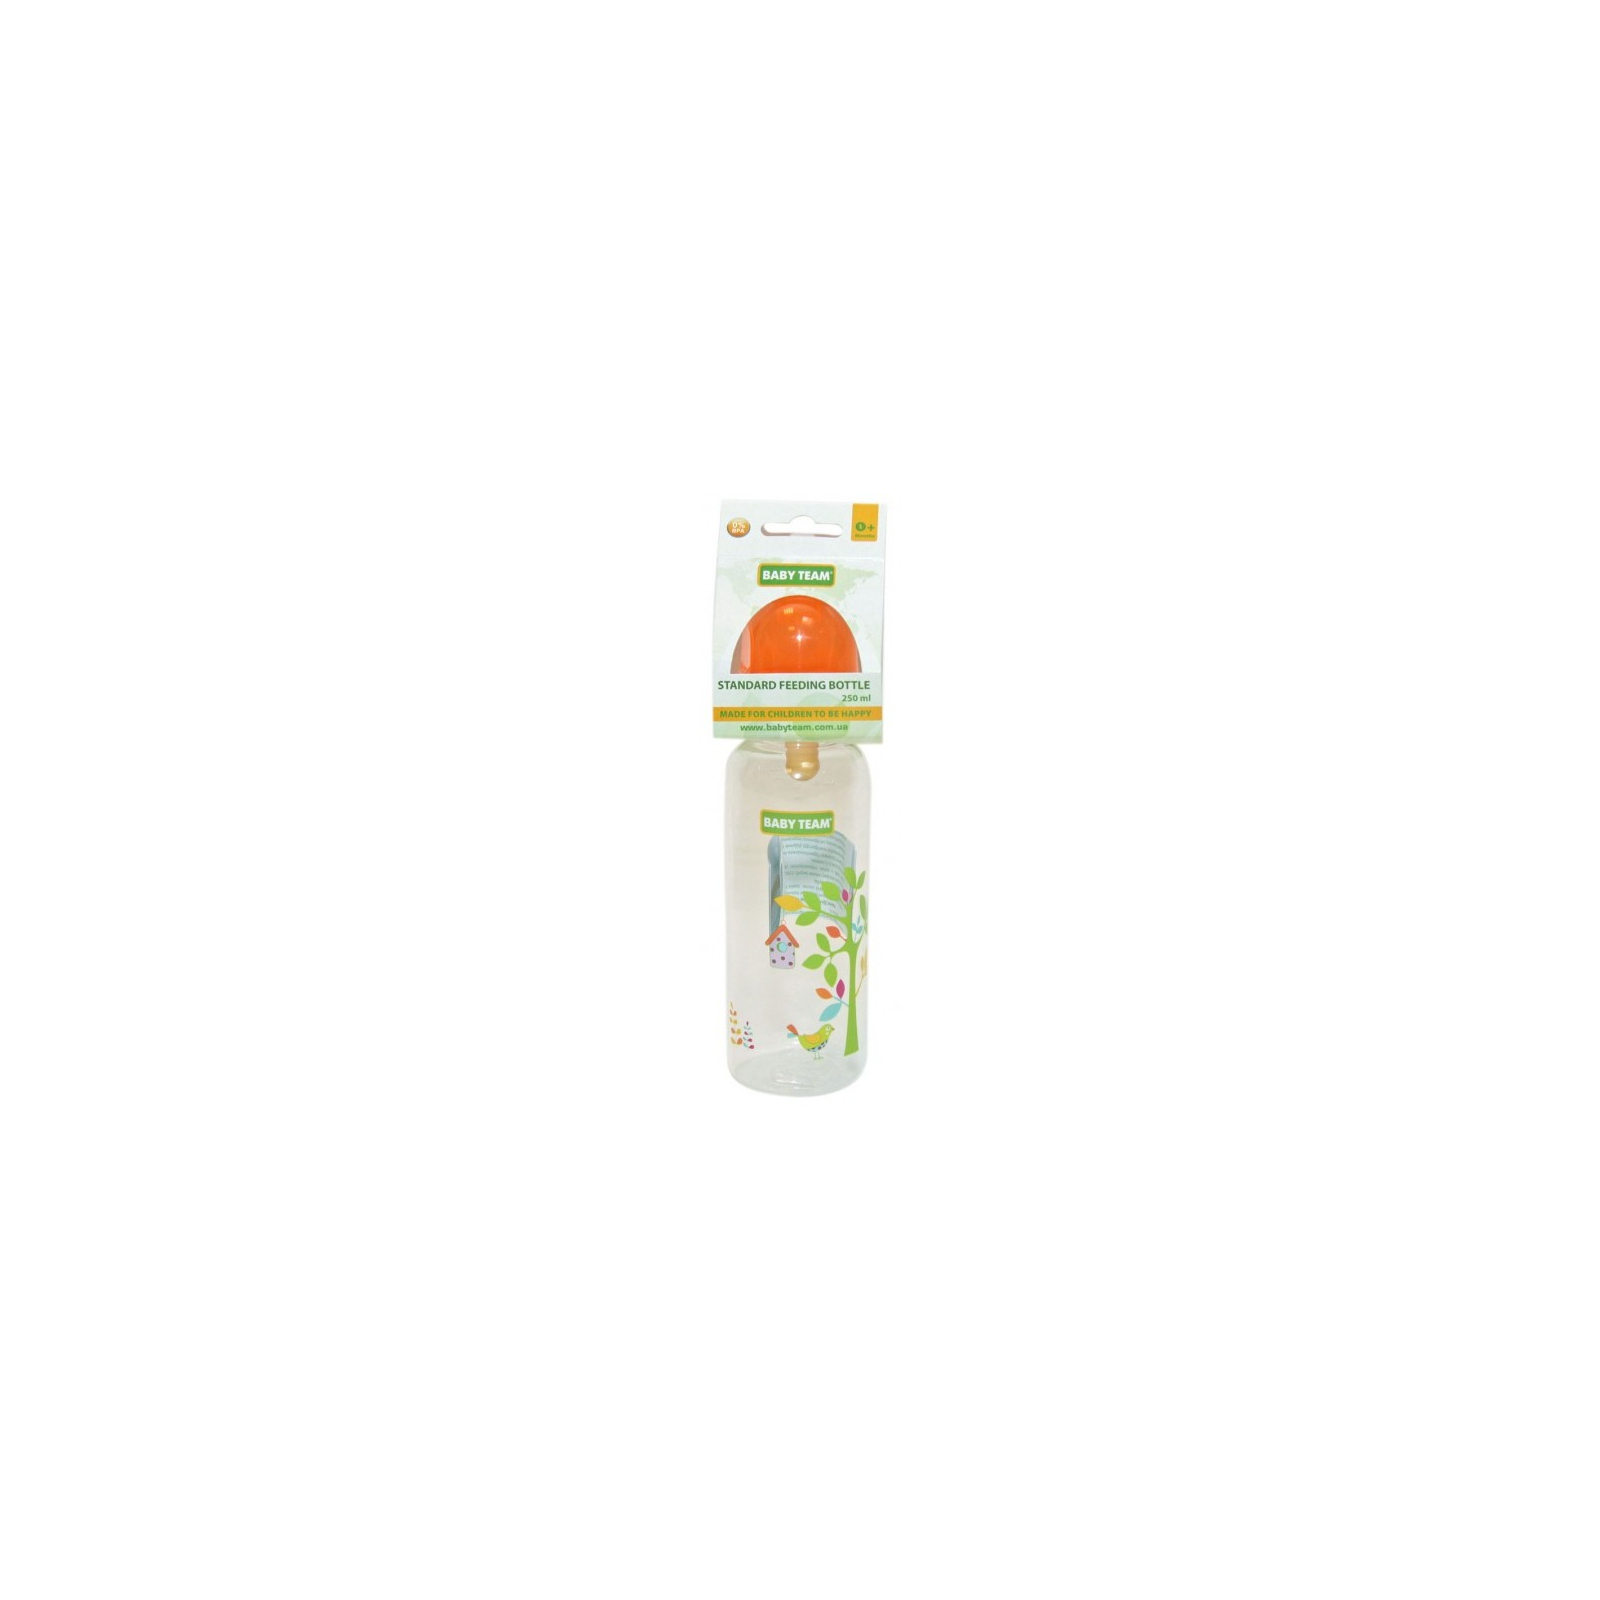 Бутылочка для кормления Baby Team с латексной соской, 250 мл 0+ оранж (1310_оранжевый)